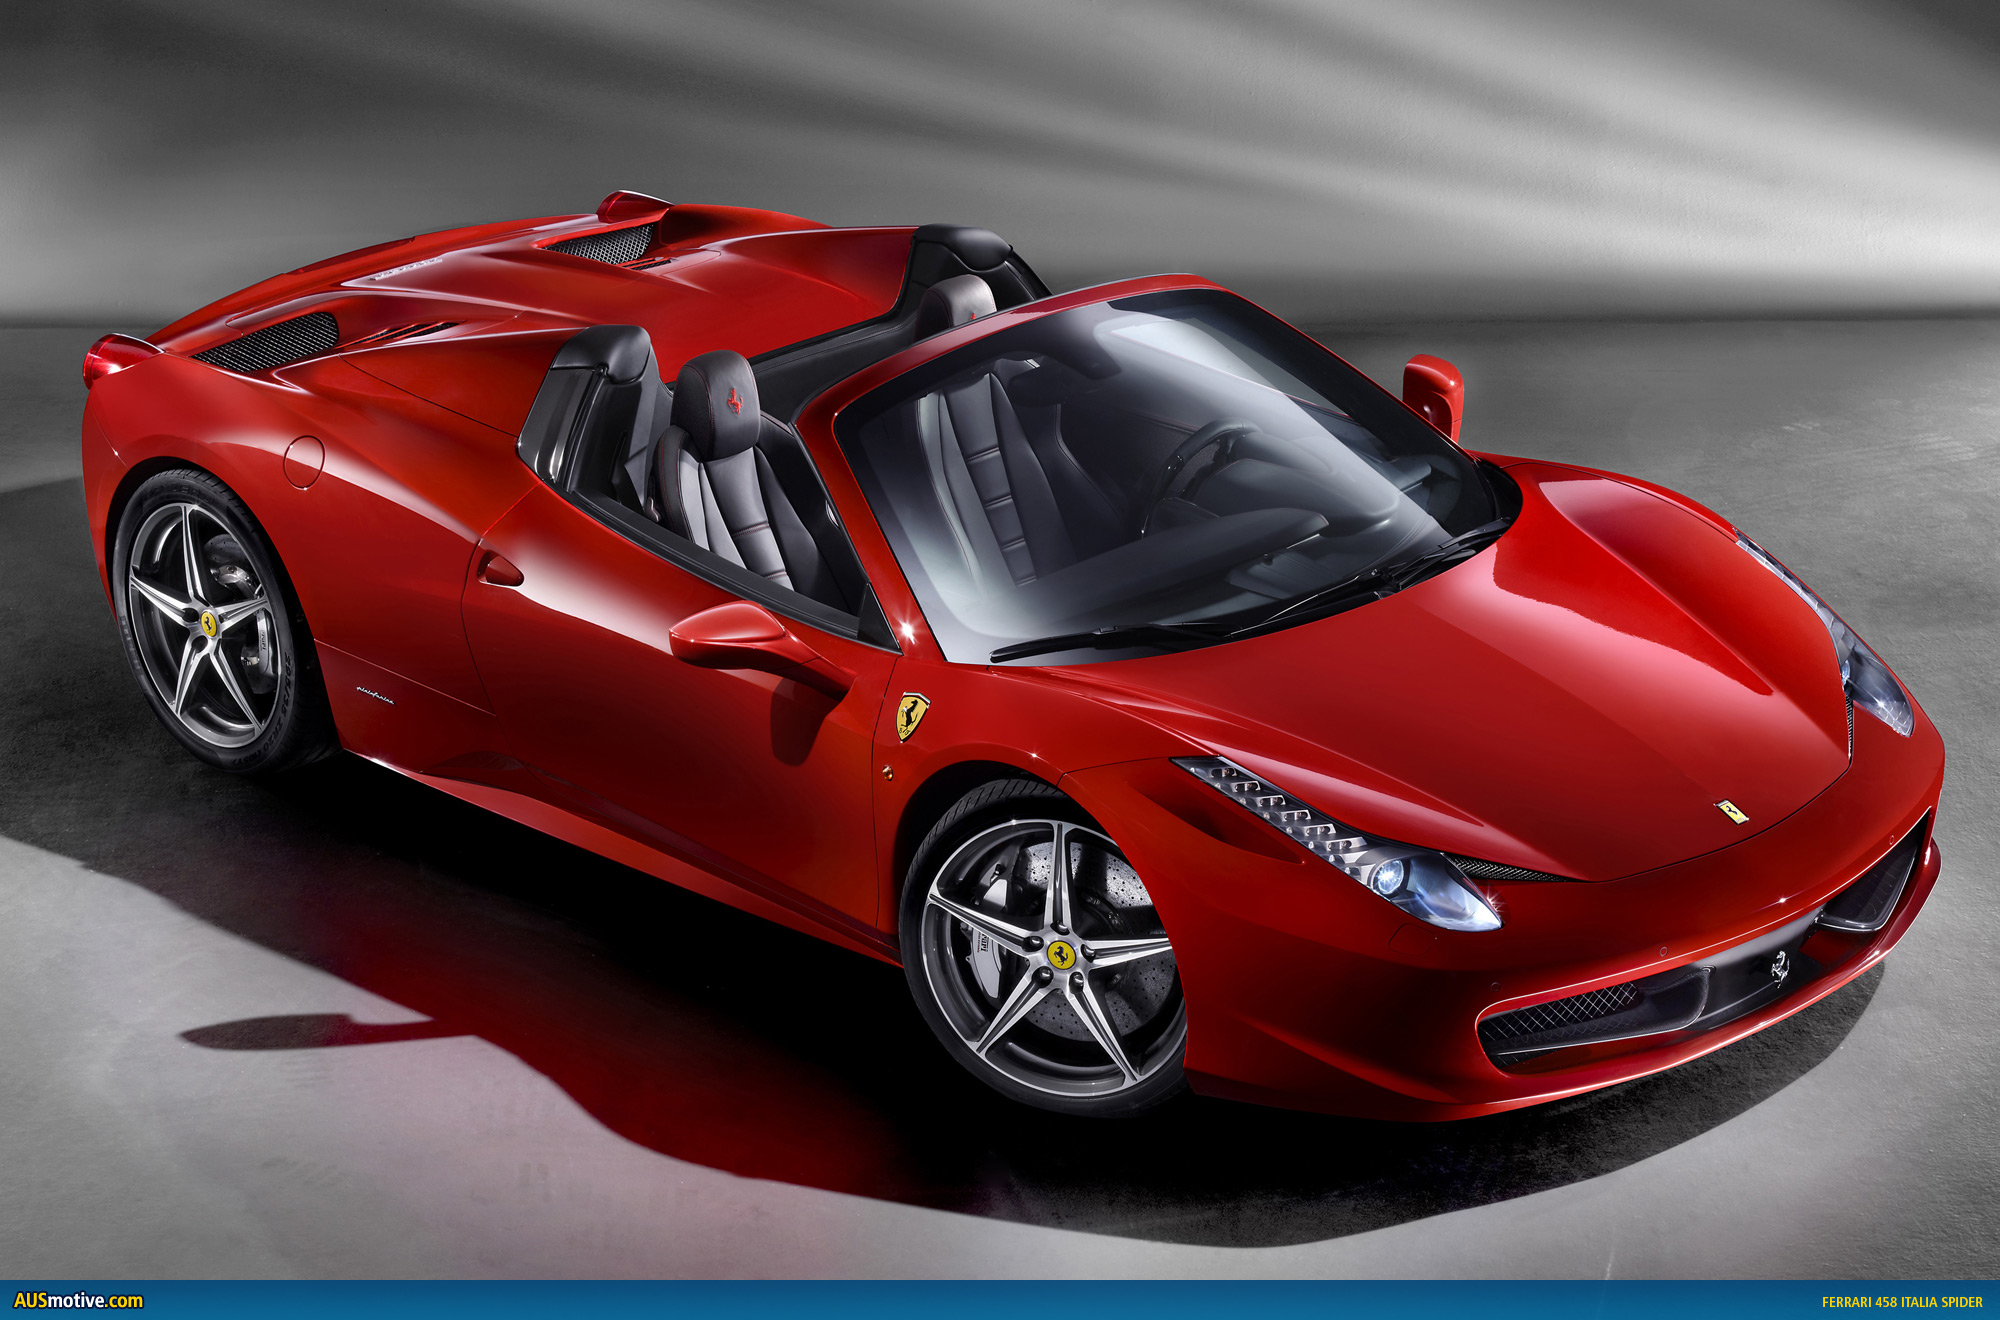 OFFICIAL: Ferrari 458 Italia Spider – AUSmotive.com